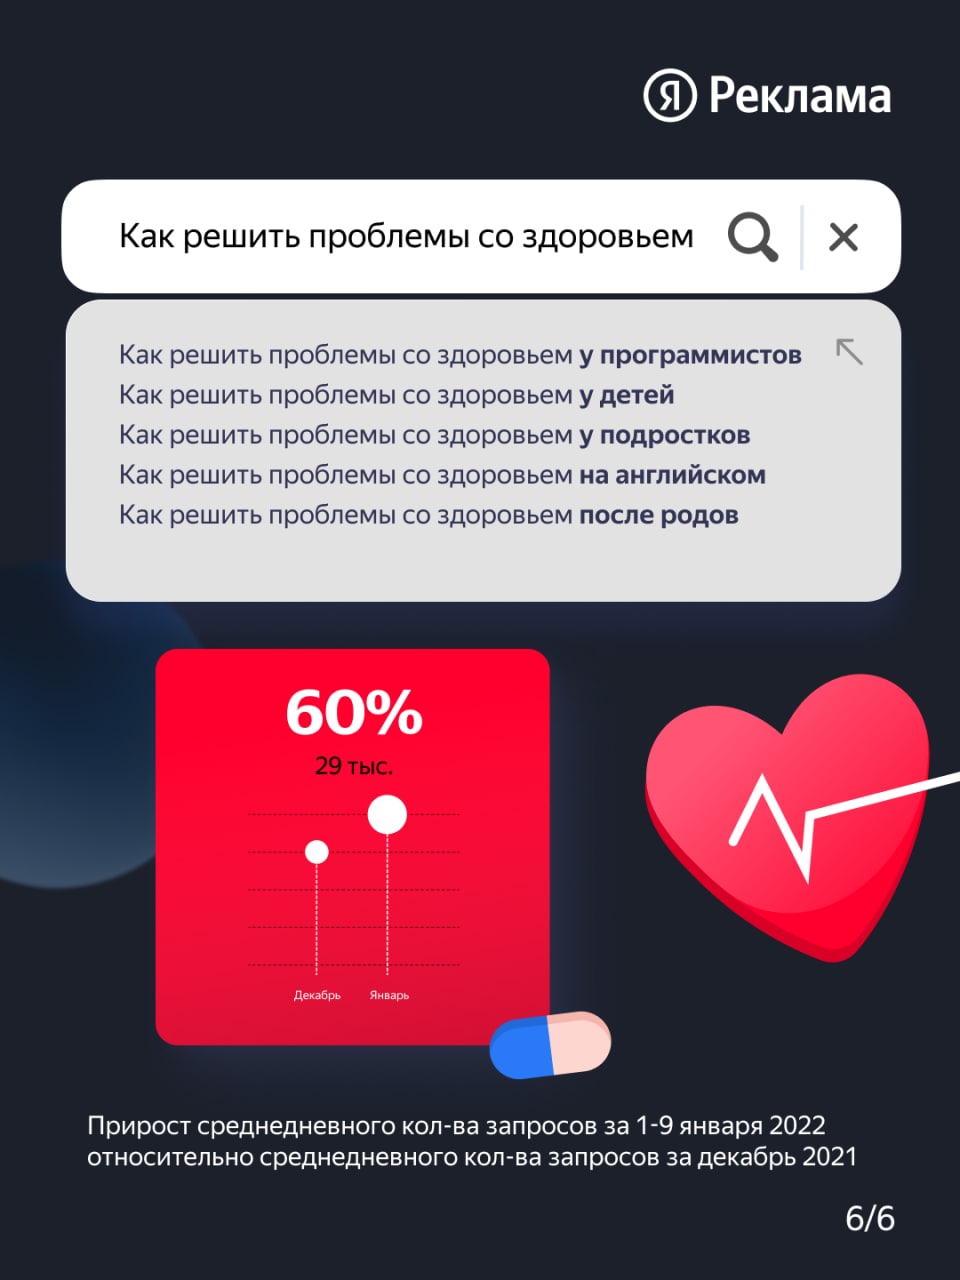 Яндекс: самые популярные запросы россиян в праздники